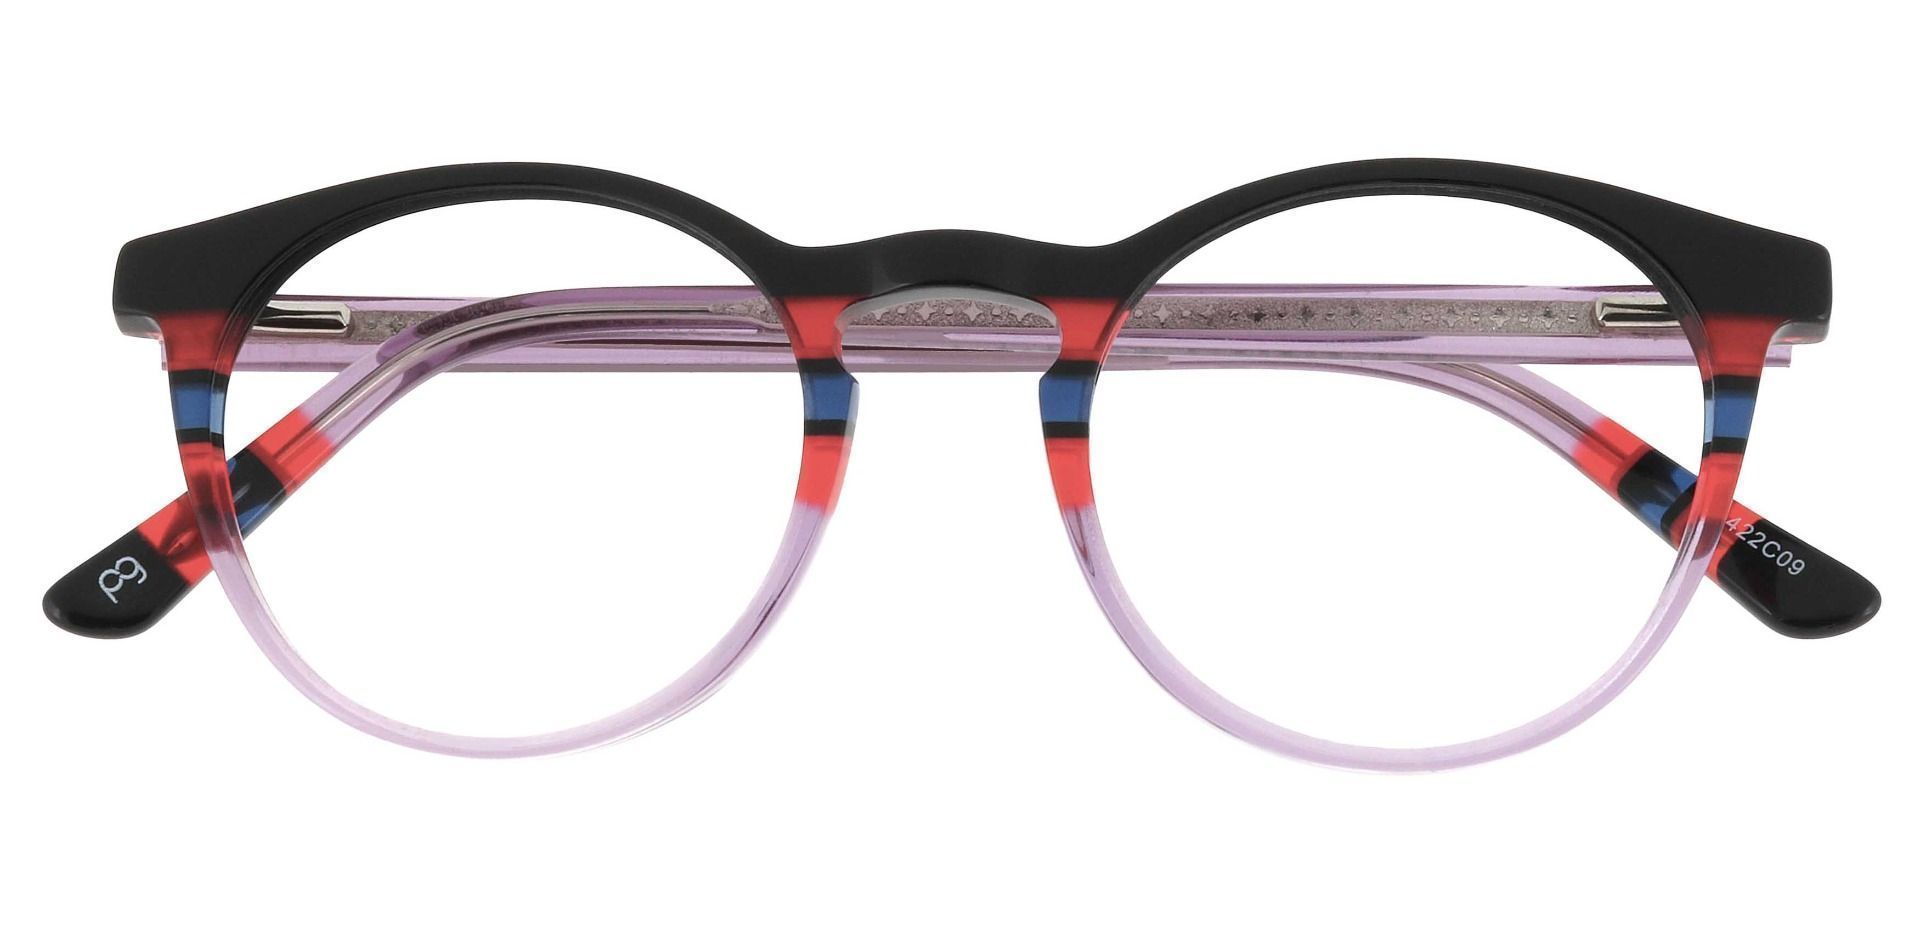 Jellie Round Prescription Glasses - Black/red Lavender Stripe  Purple